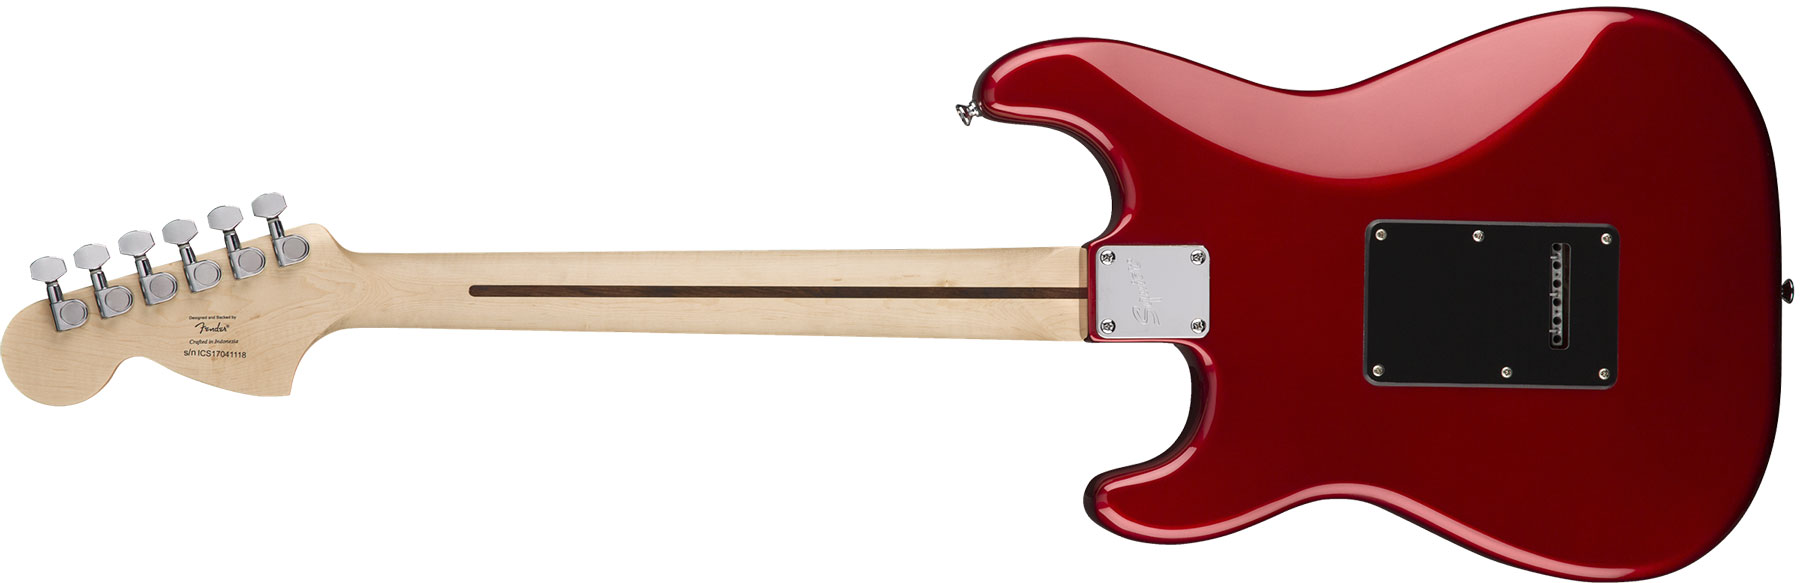 Squier Strat Affinity Hss Pack +fender Frontman 15g Trem Lau - Candy Apple Red - E-Gitarre Set - Variation 2